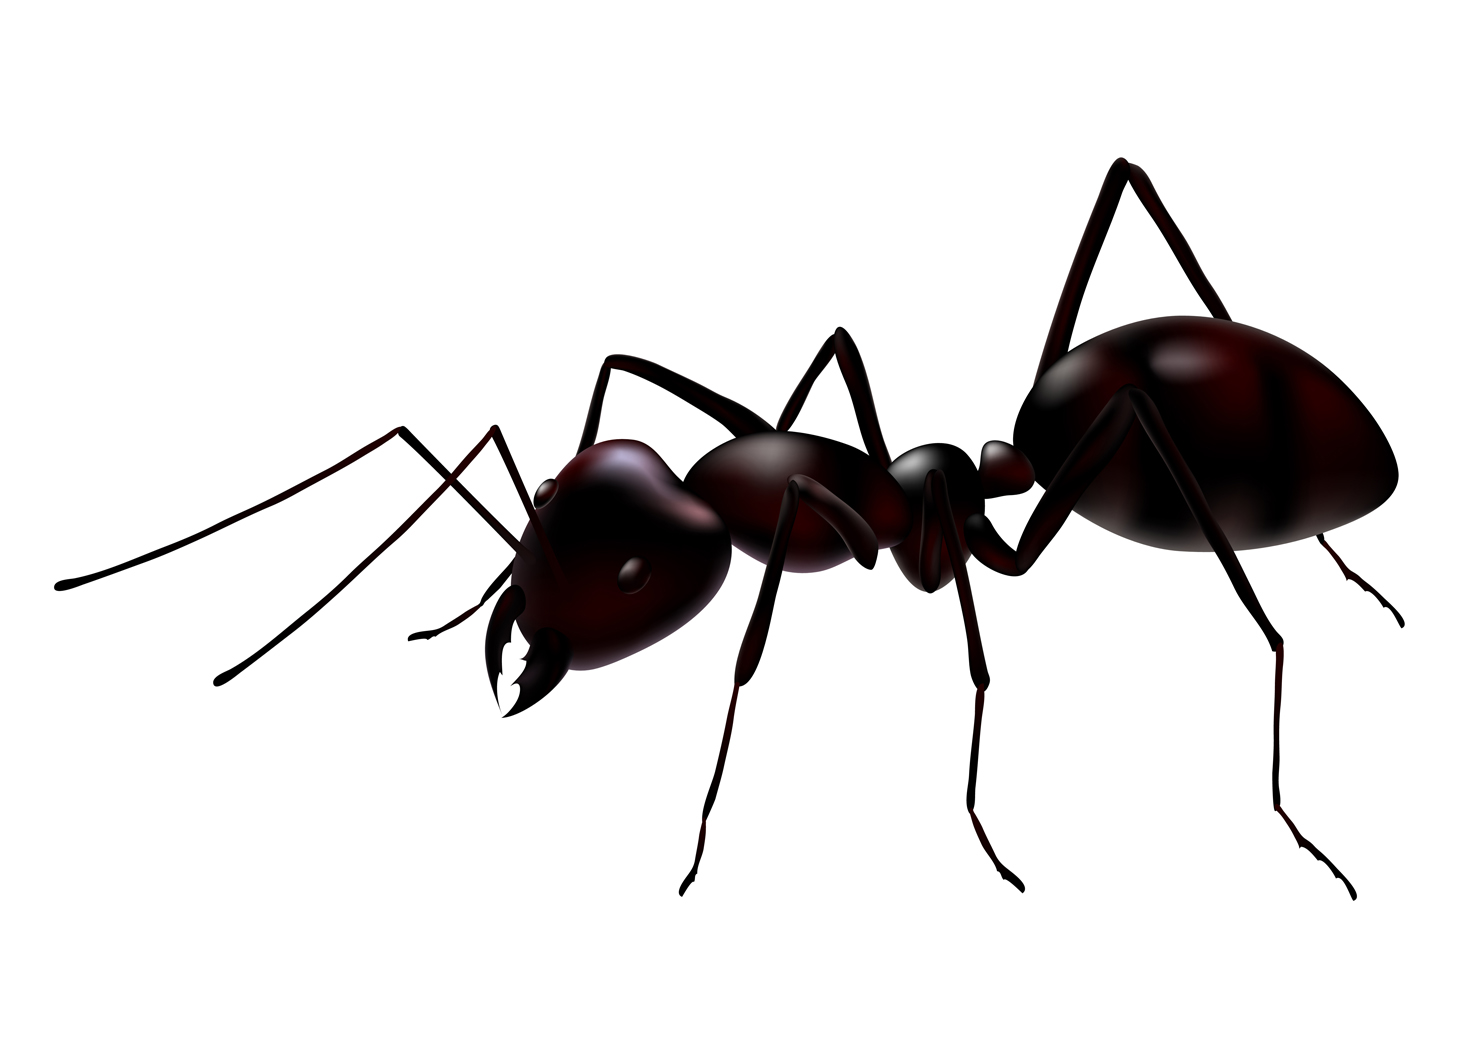 Ants-3.jpg